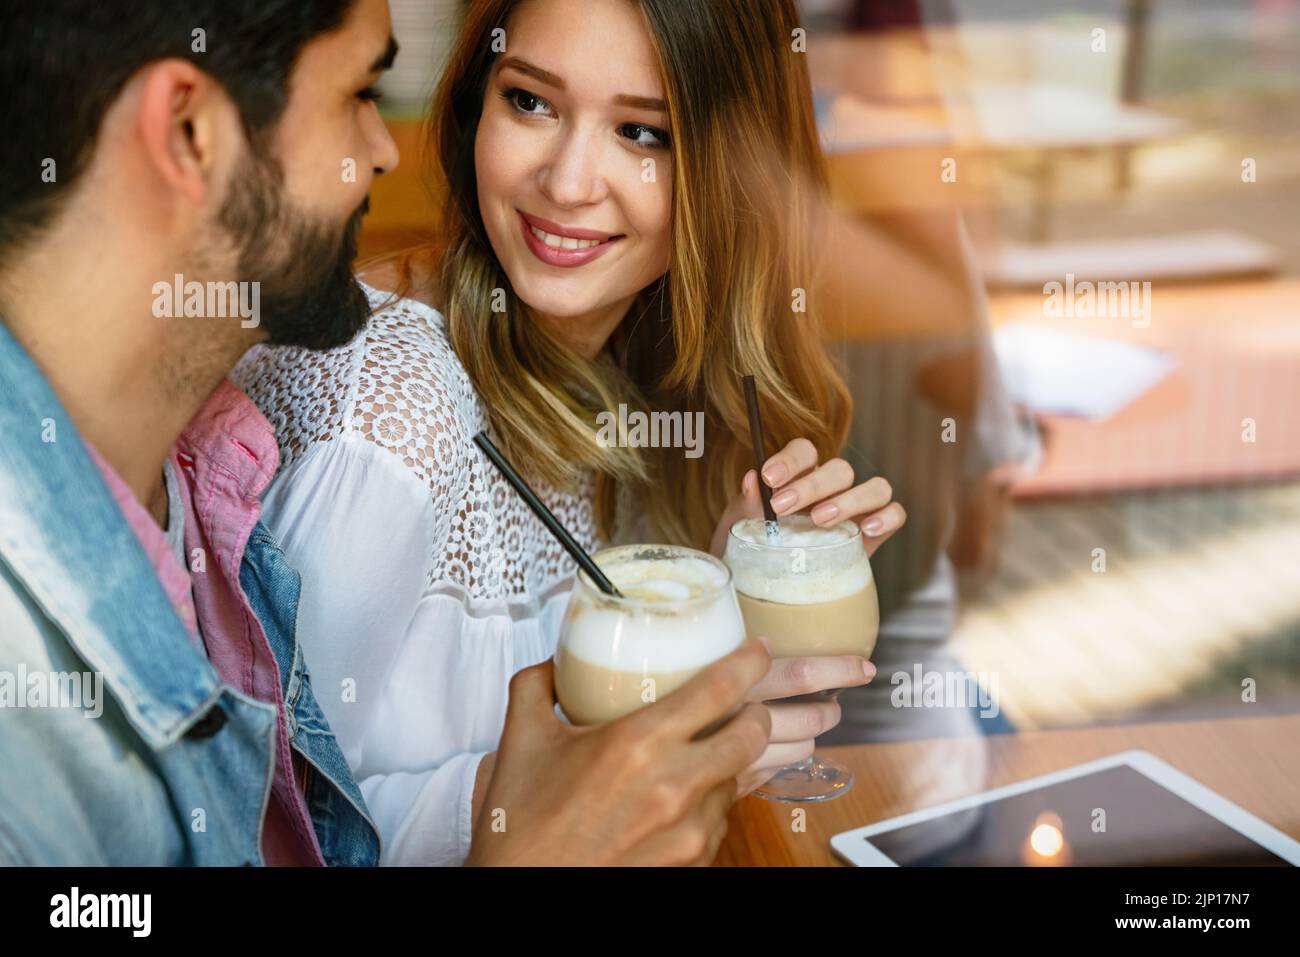 Amour romantique couple drinking coffee, ayant une date dans le café. Banque D'Images